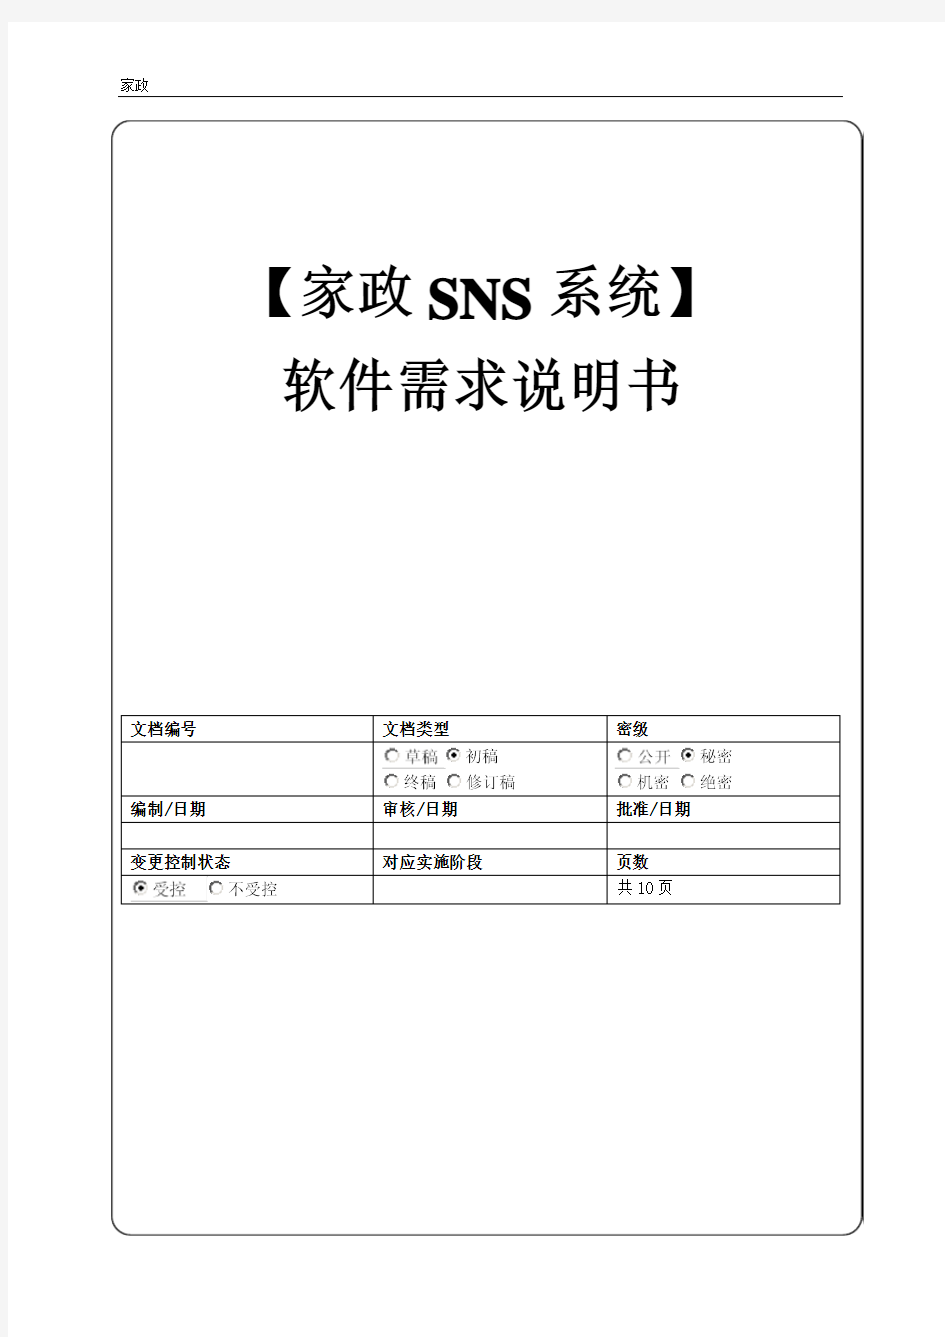 家政SNS系统软件需求说明书V1.2